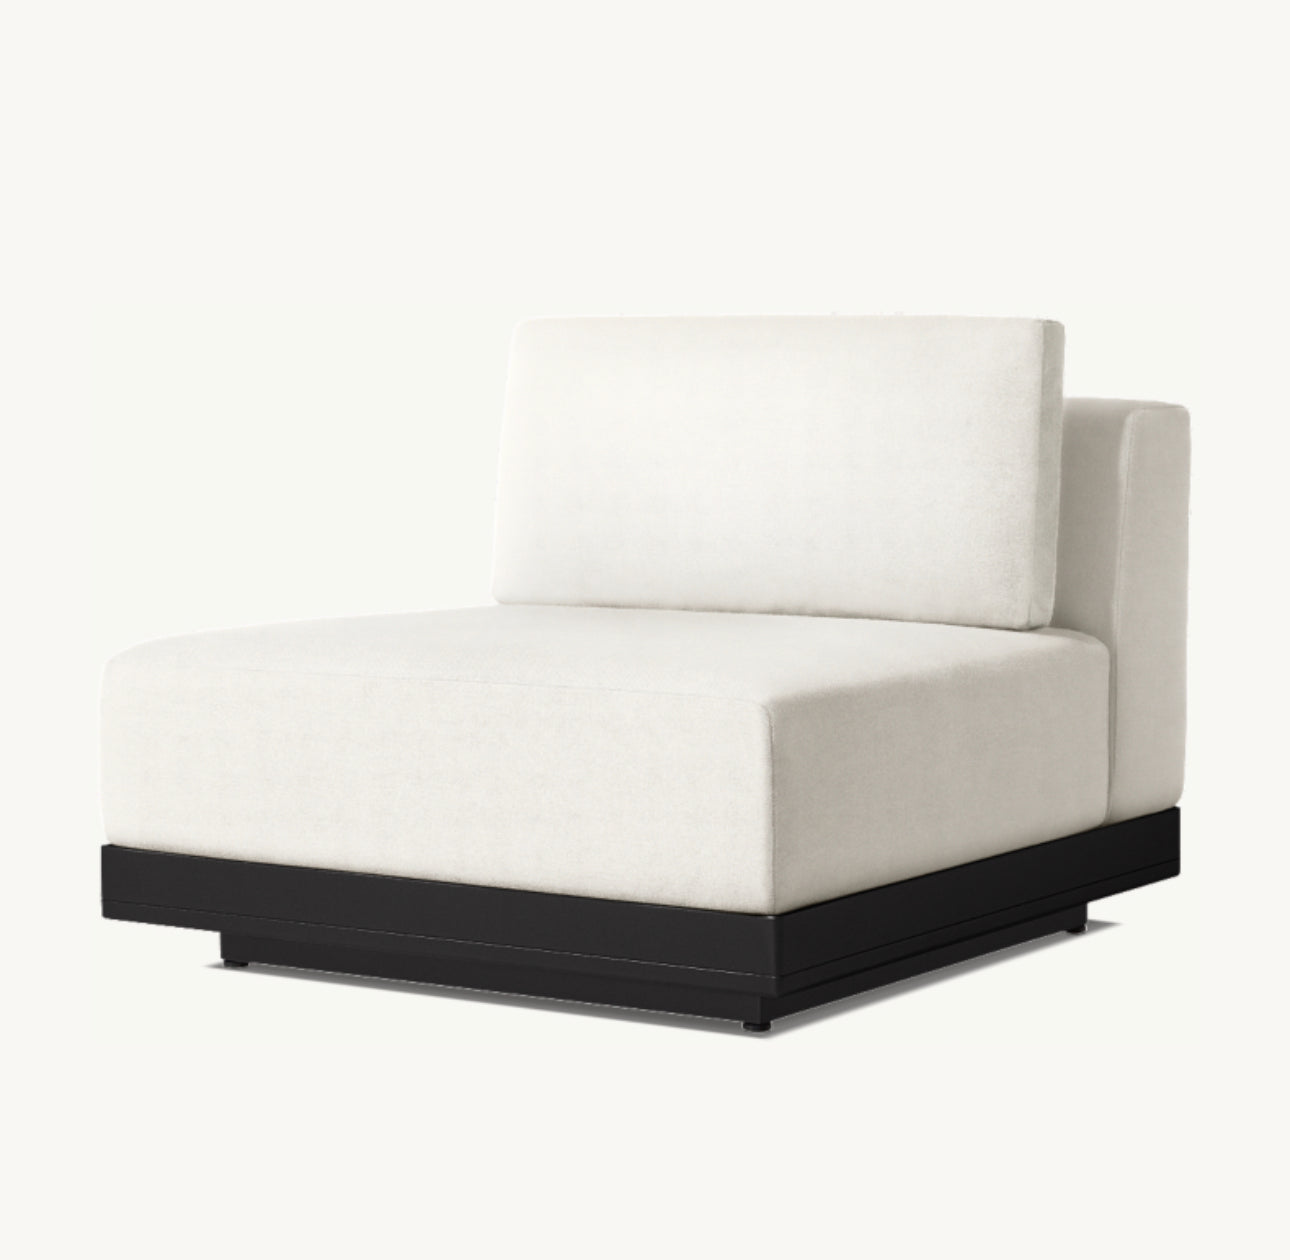 Ultra Modern “Rio” Aluminium Lounge Chair